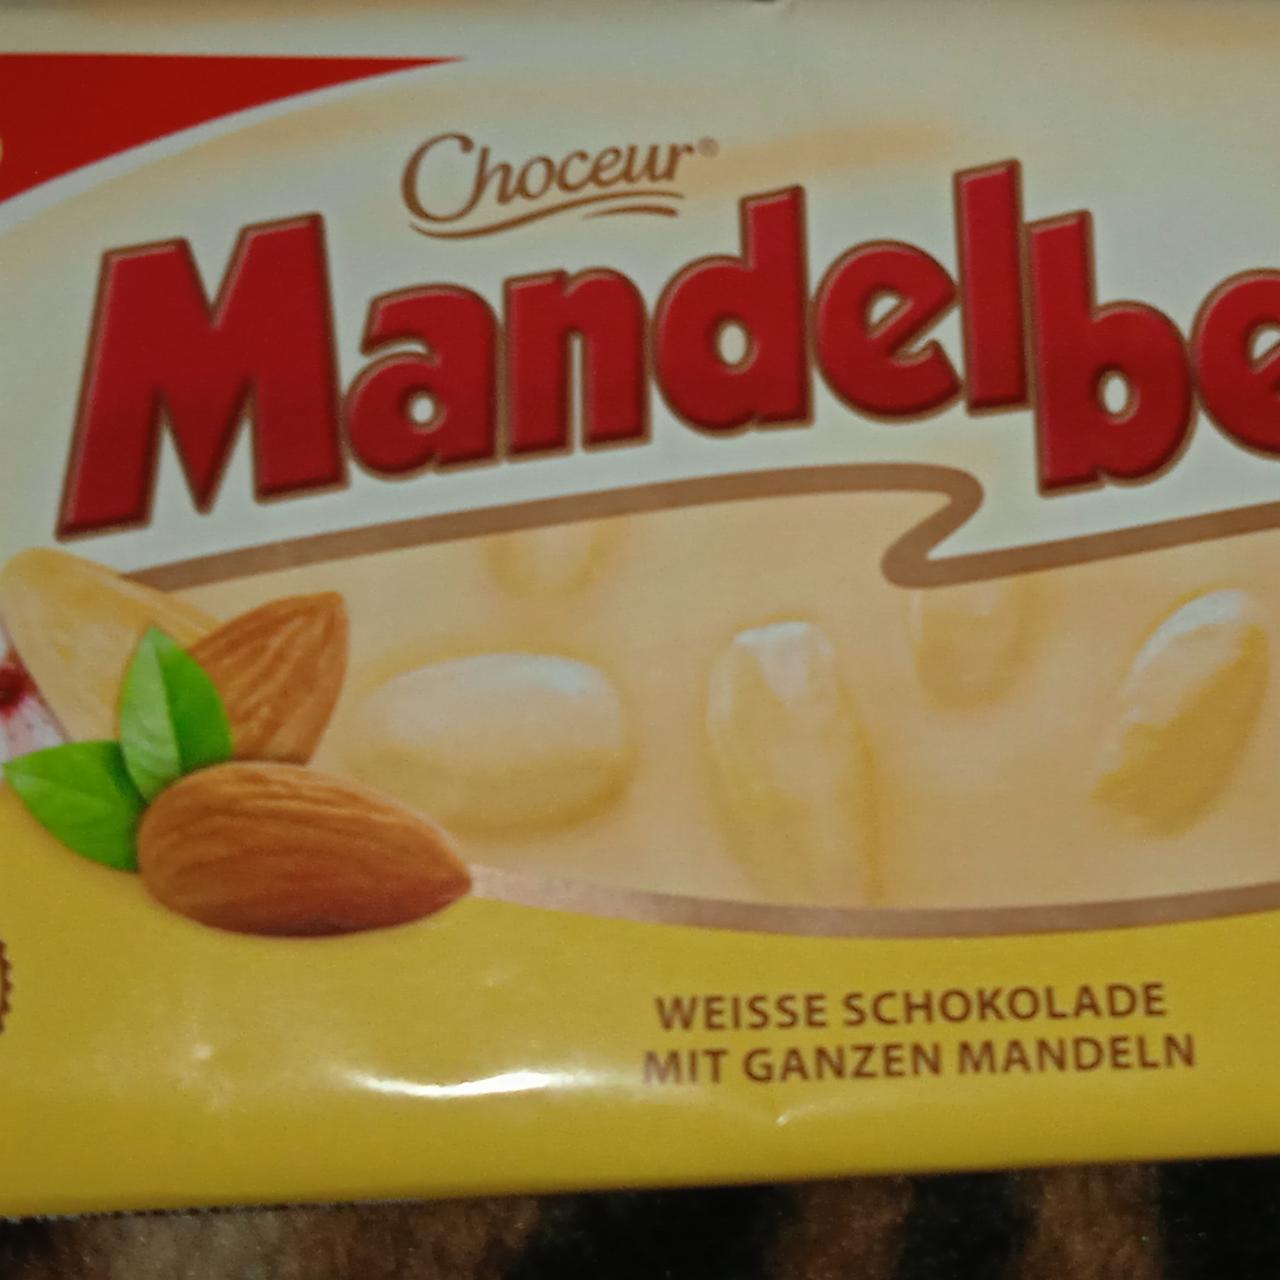 Fotografie - Mandelbeisser Weisse schokolade mit ganzen mandeln Choceur